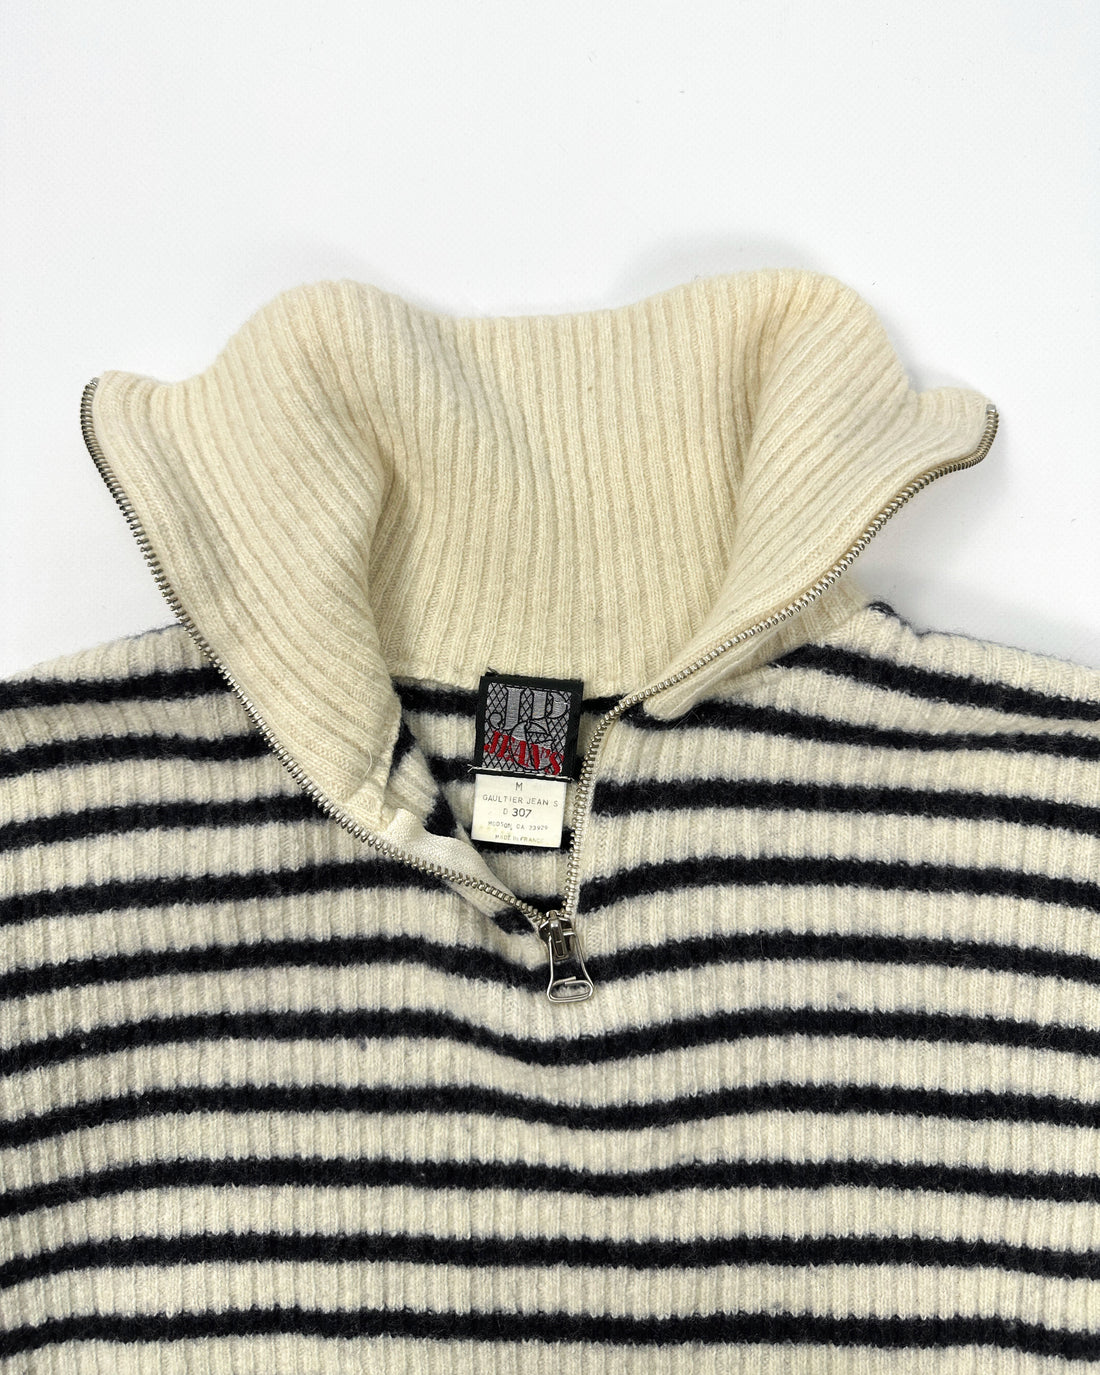 Jean Paul Gaultier 1/4 Zip Wool Pullover 1980's